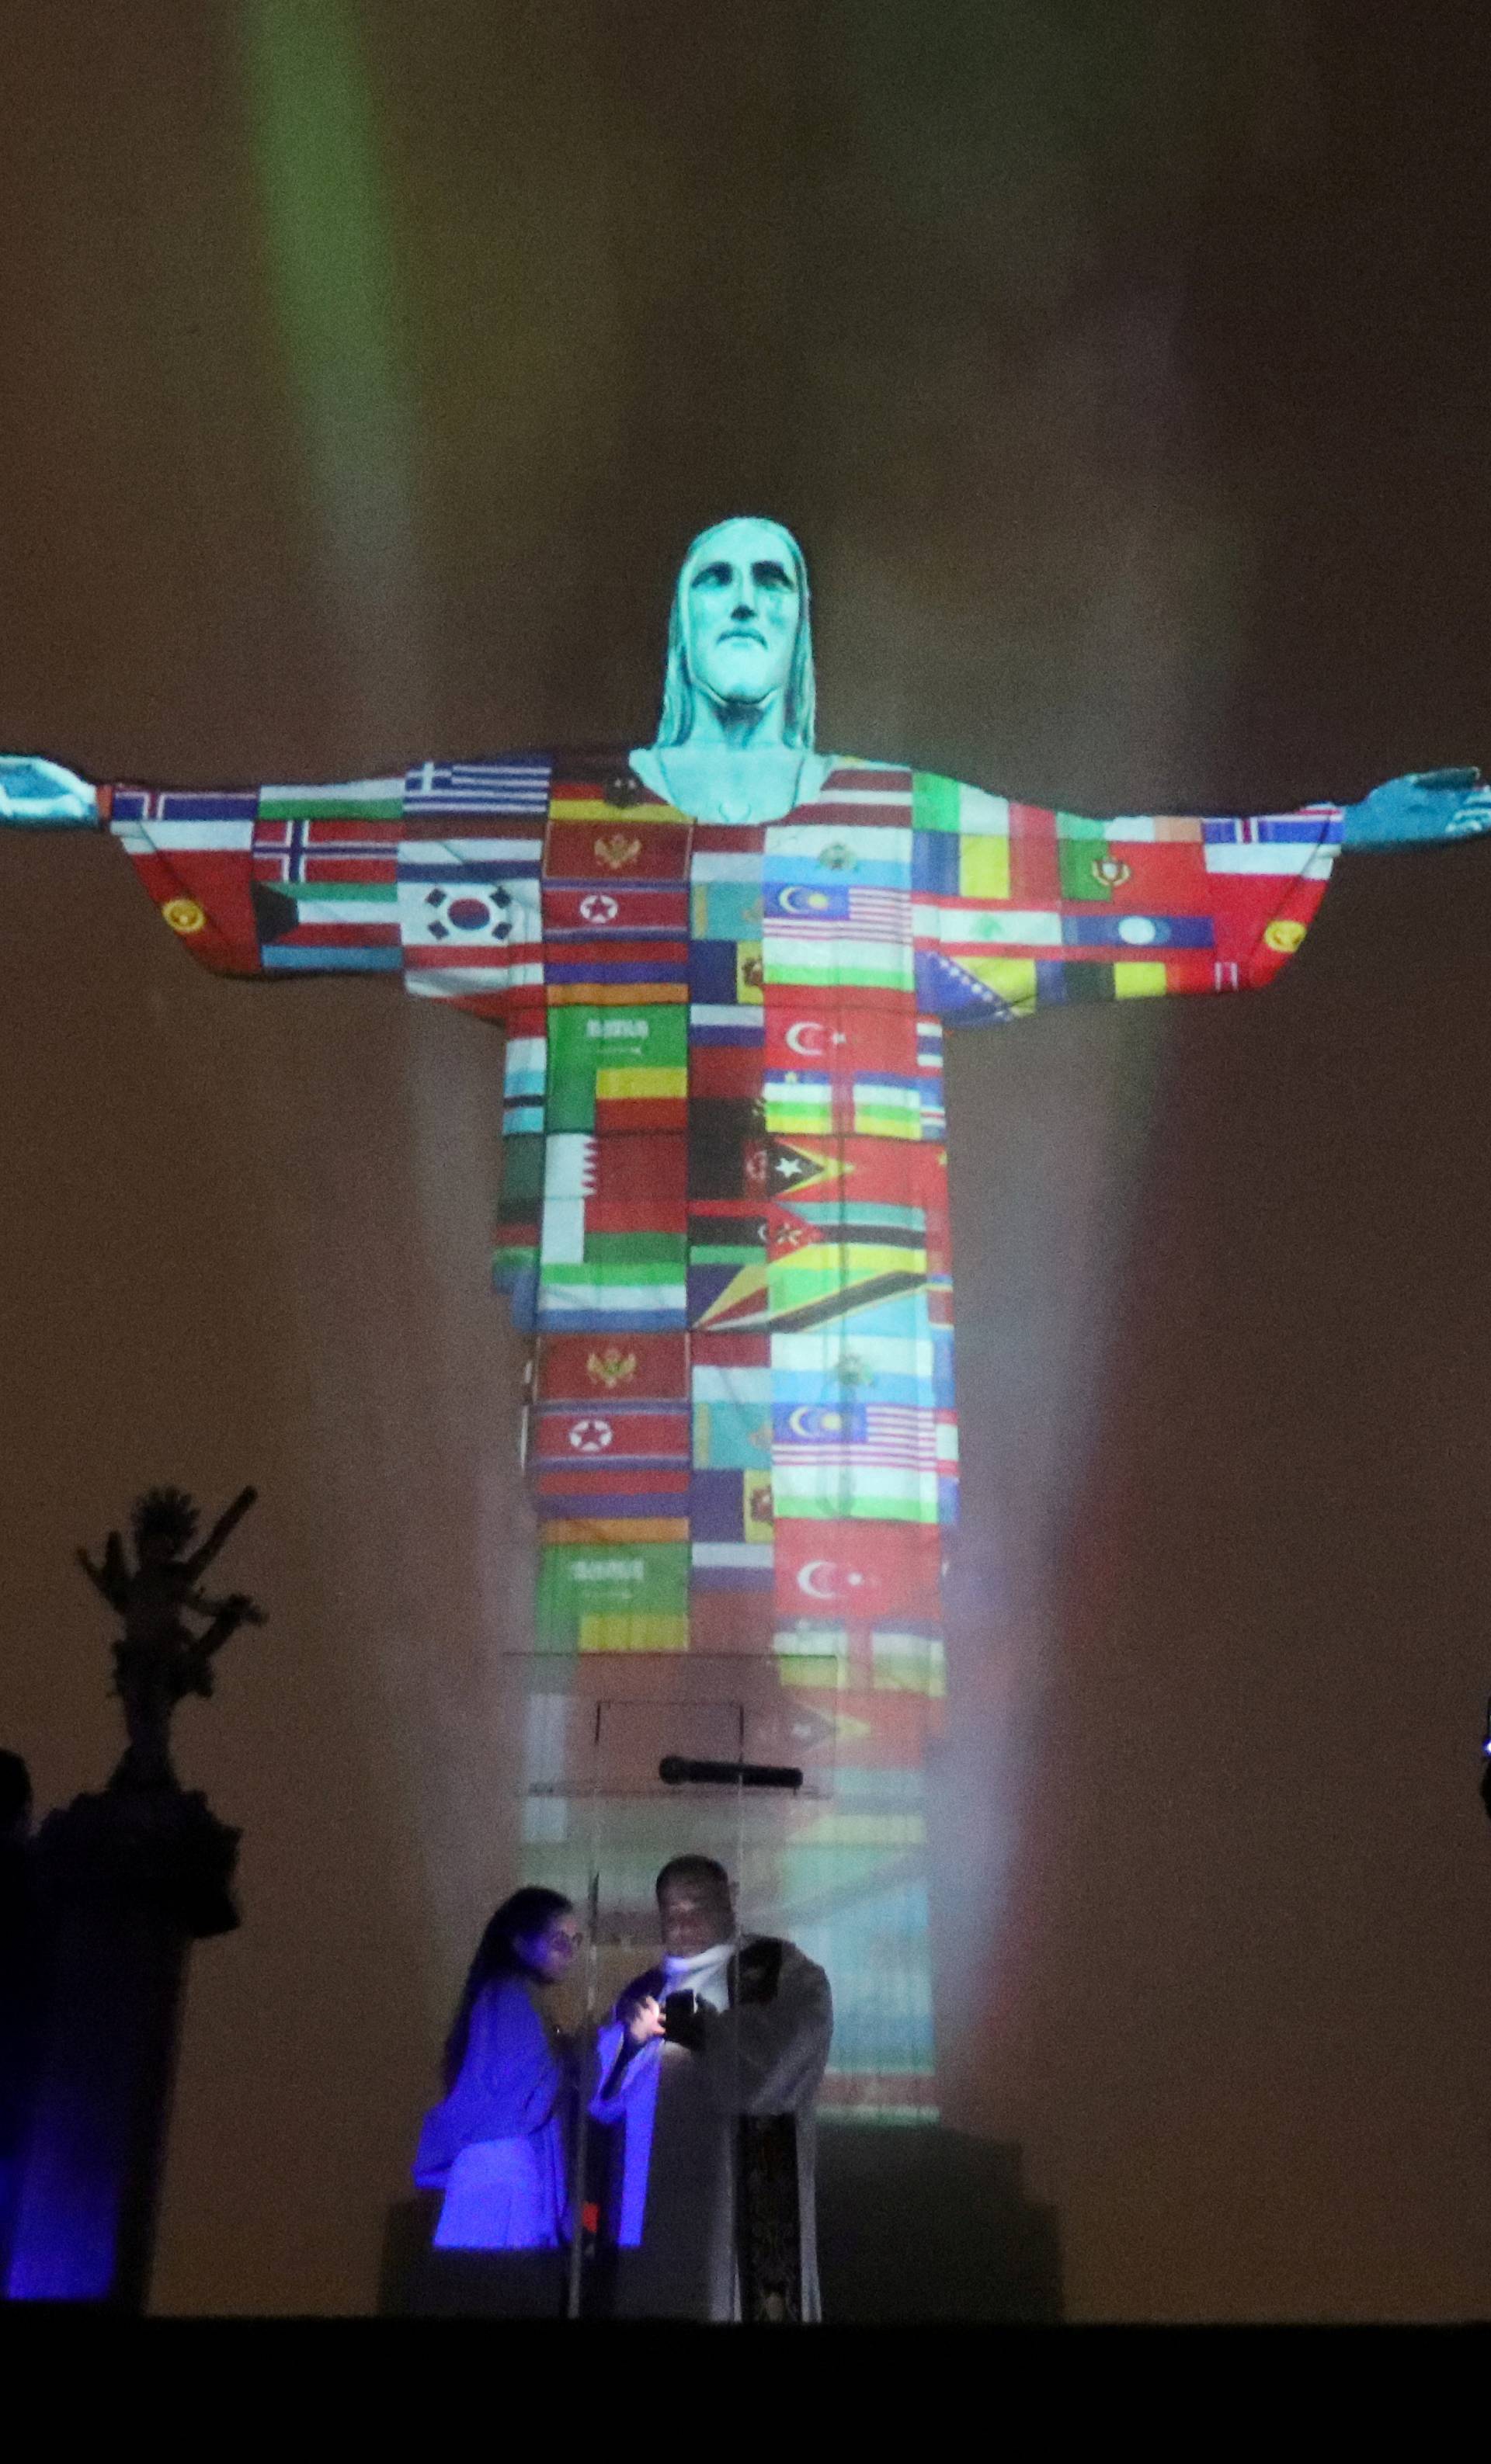 Kip Krista u Riu obojen u boje zemalja pogođenih koronom